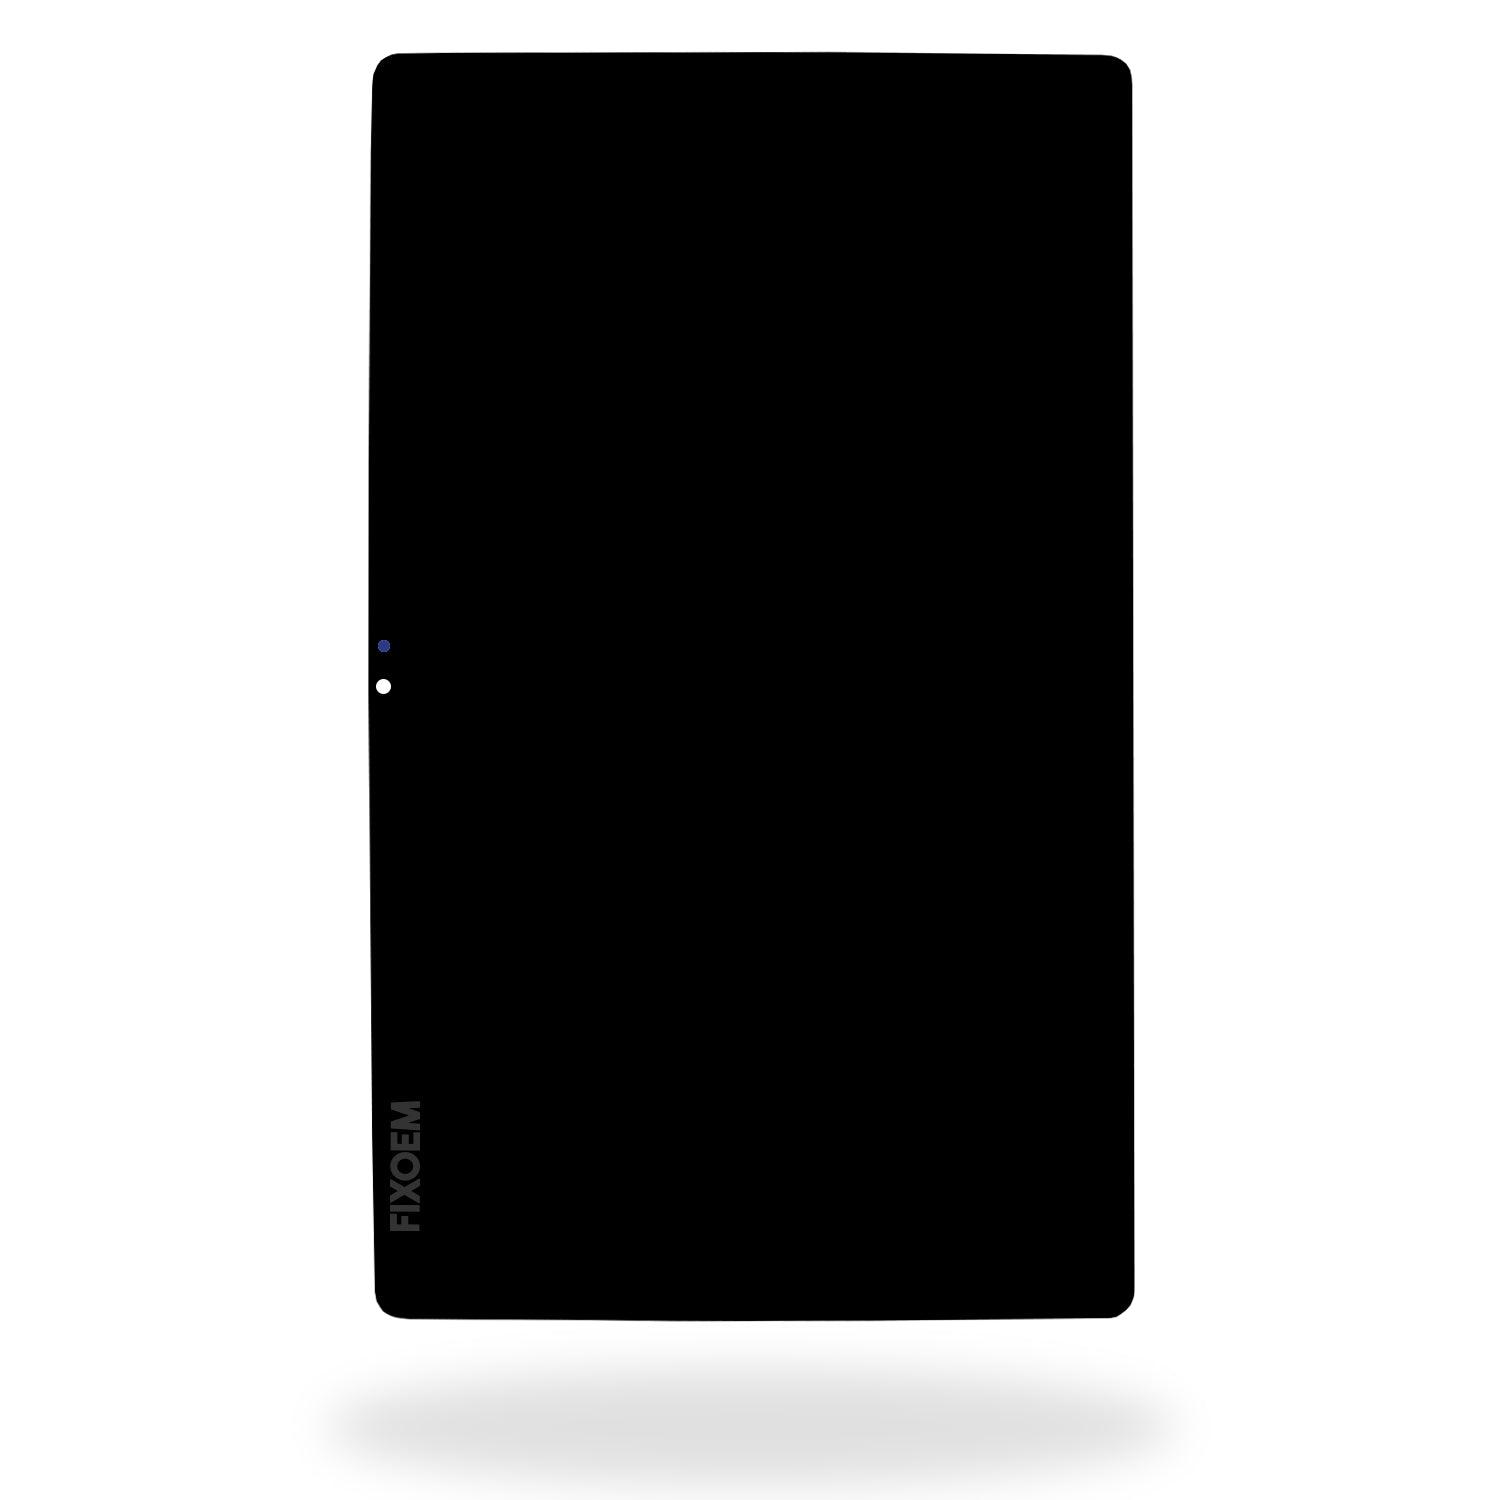 Display Samsung Tab A7 2020 10.4 Sm-T500 Negro a solo $ 530.00 Refaccion y puestos celulares, refurbish y microelectronica.- FixOEM